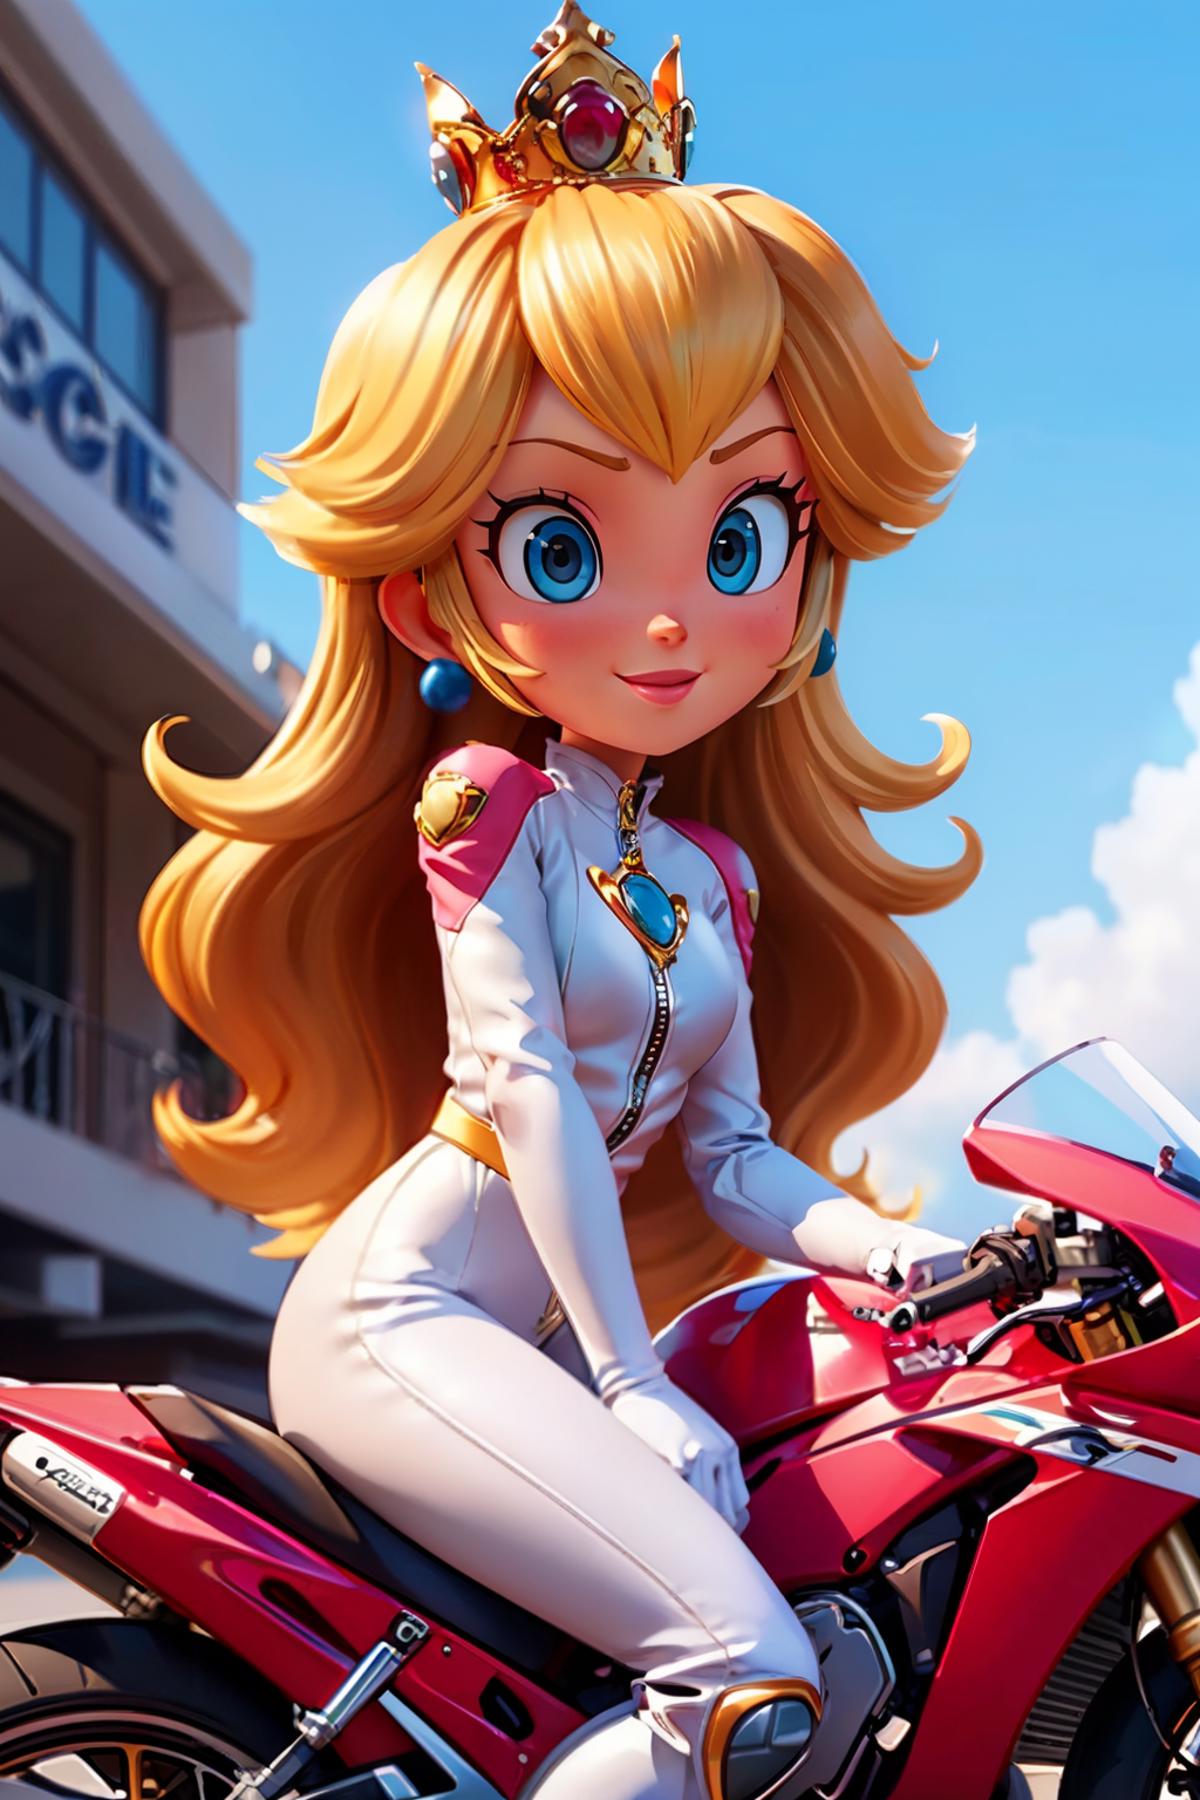 princess peach - The Super Mario Bros. Movie - movie like image by wikkitikki